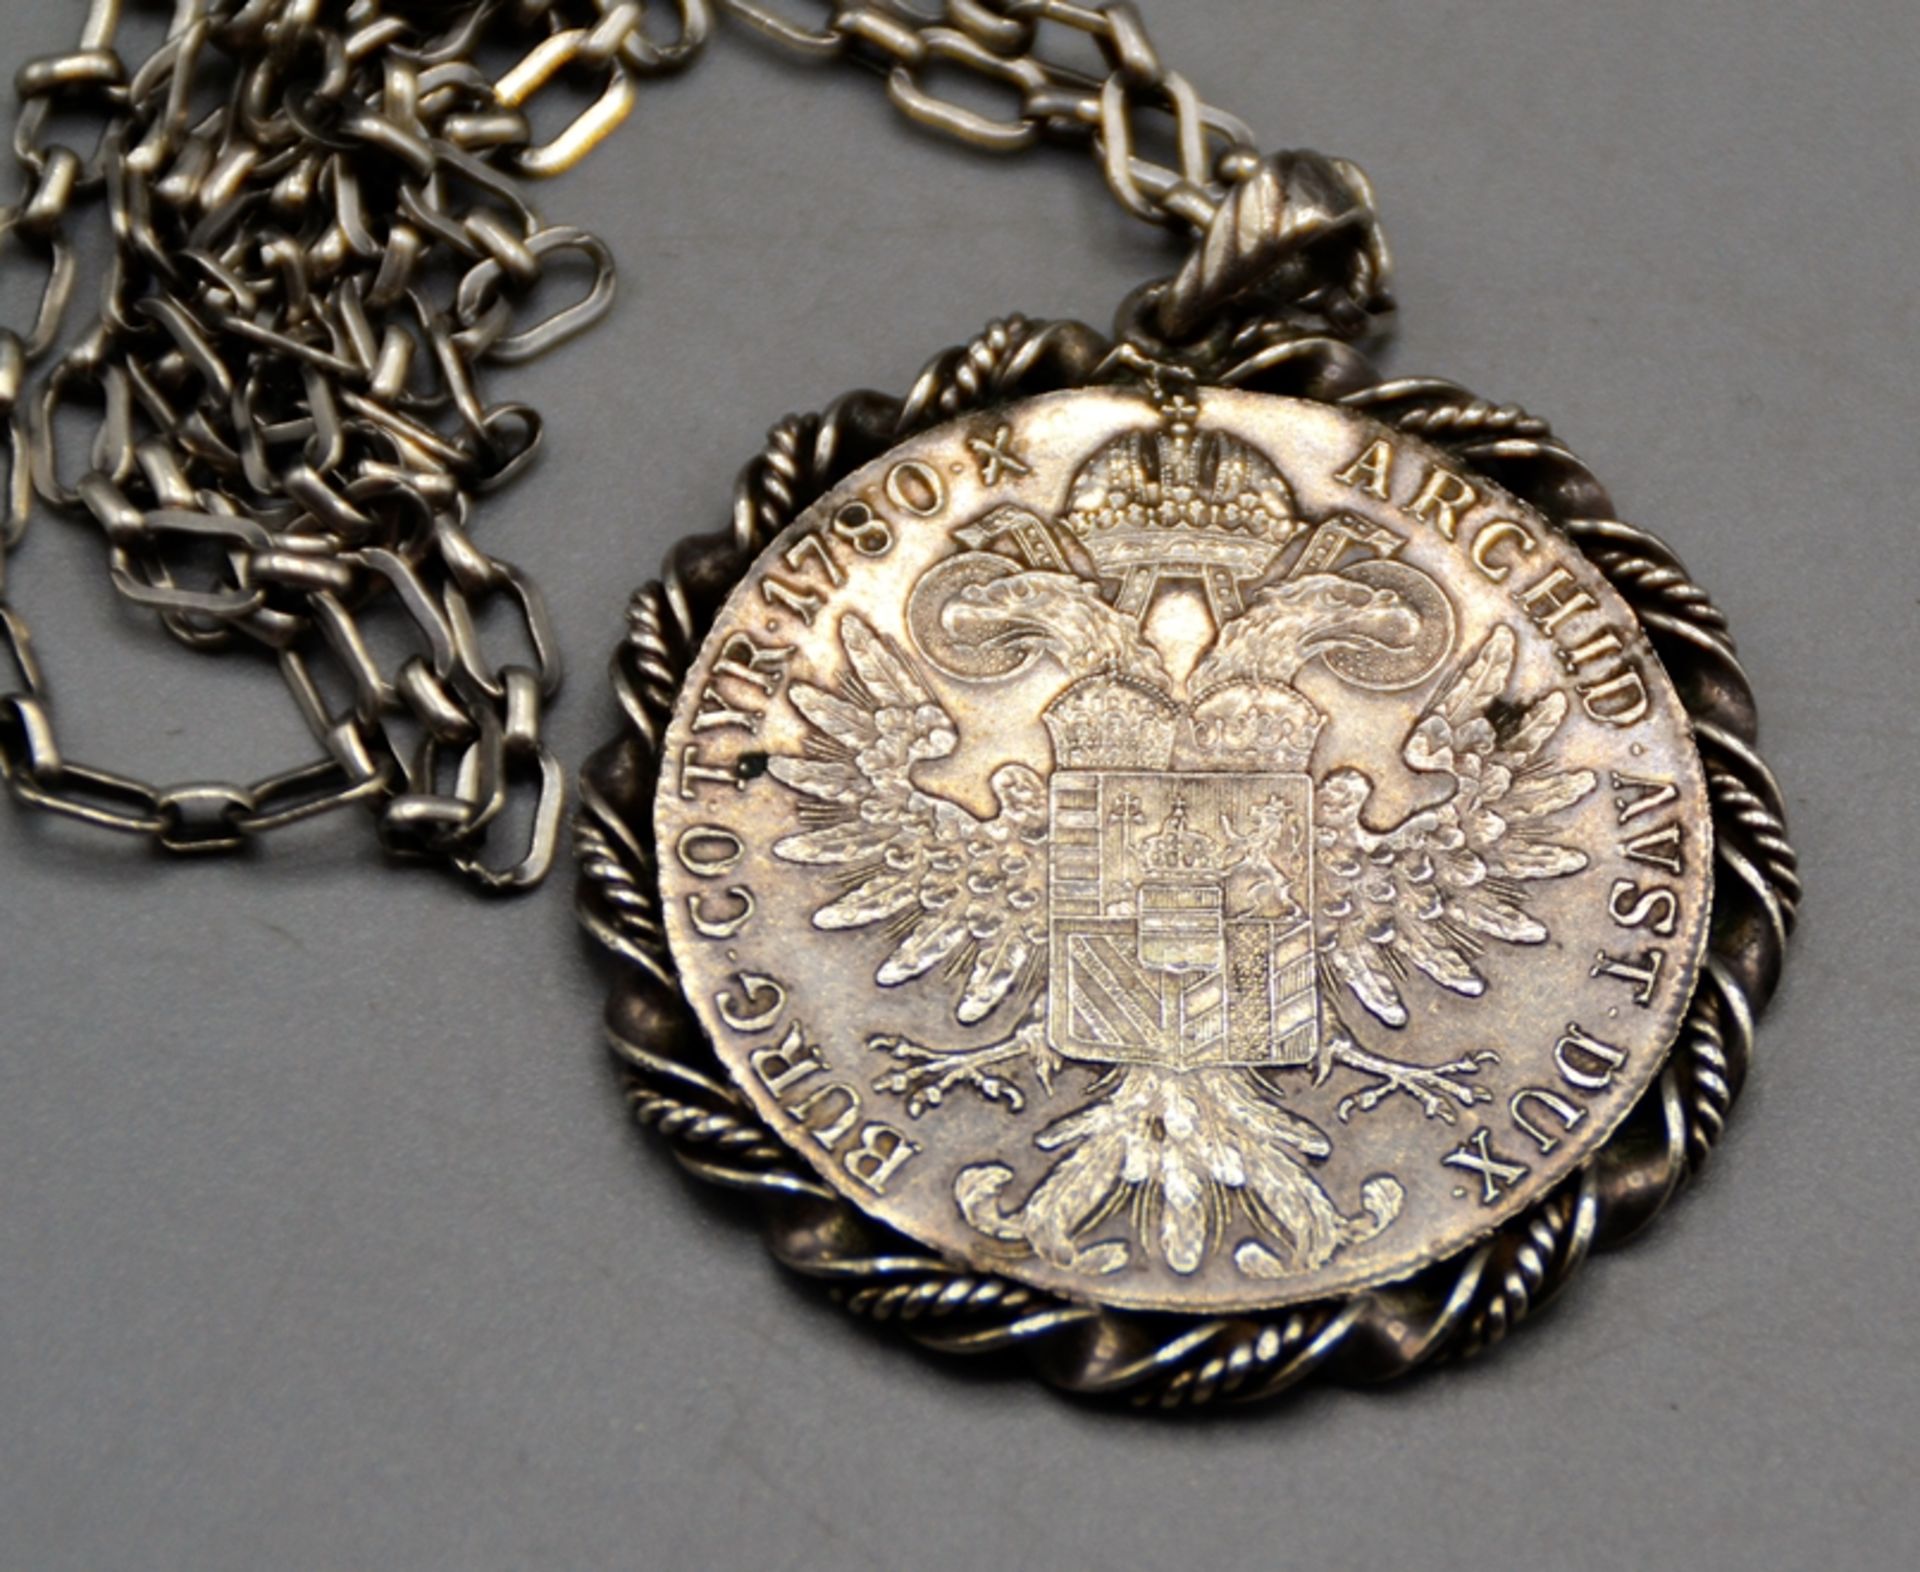 Maria Theresien Taler Münzanhänger mit 835 Silberkette, zus. 43,2 g - Image 2 of 2